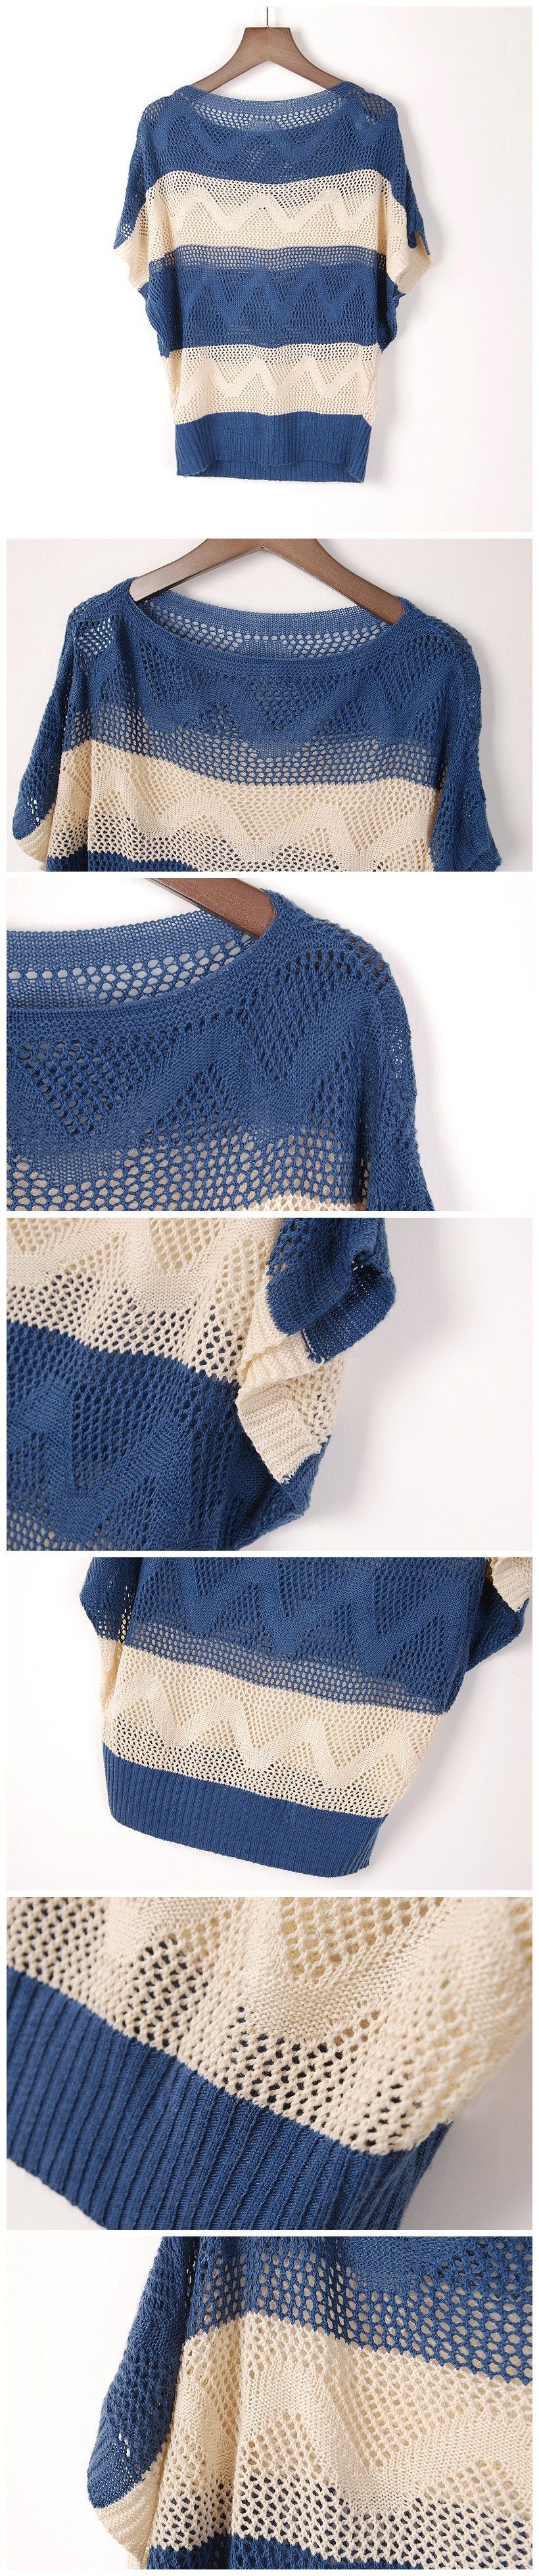 2013春夏新款女毛衣镂空针织衫 拼色镂空波浪条纹蝙蝠袖套头罩衫